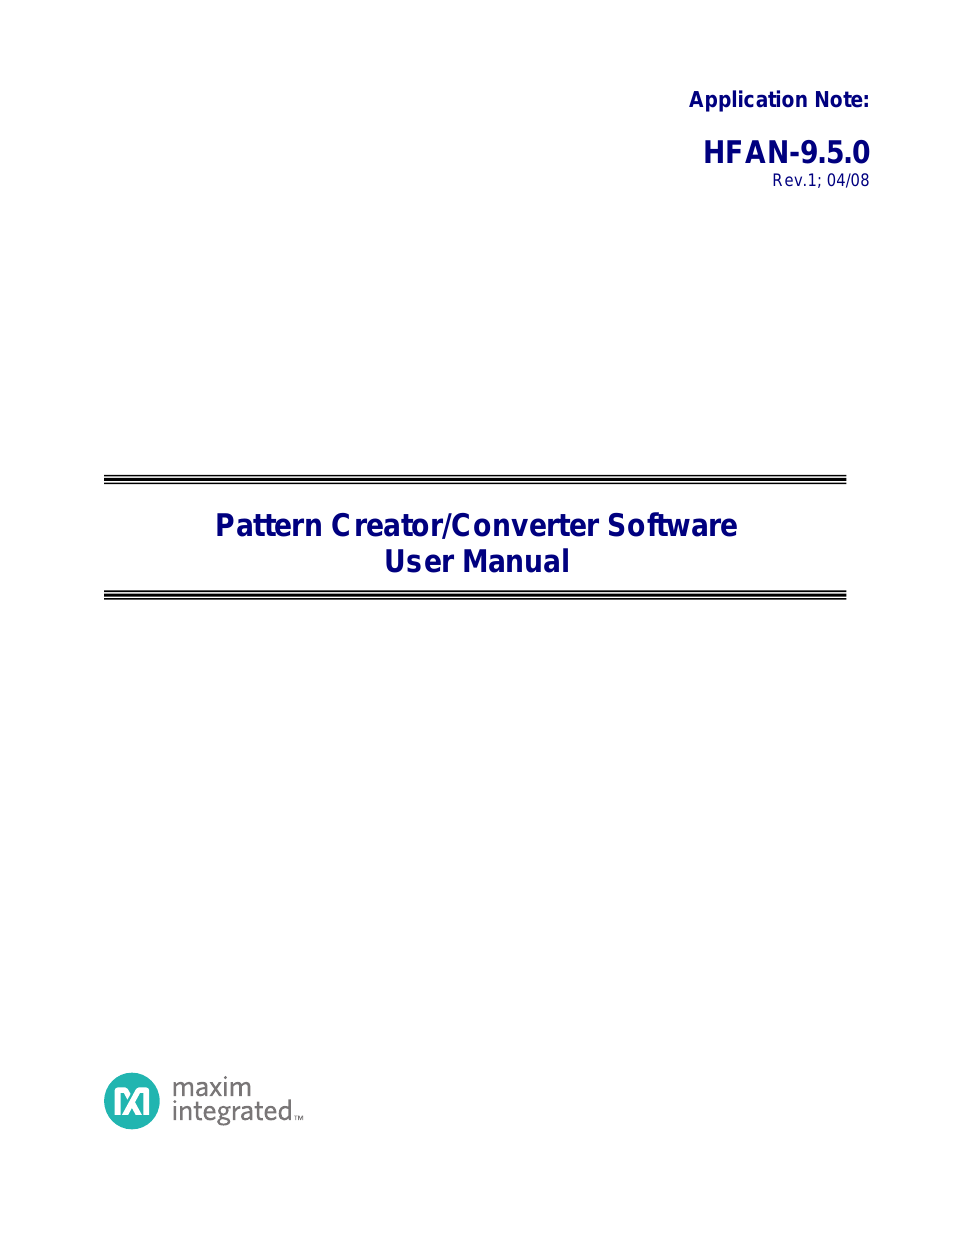 HFAN-09.5.0: Pattern Creator/Converter Software